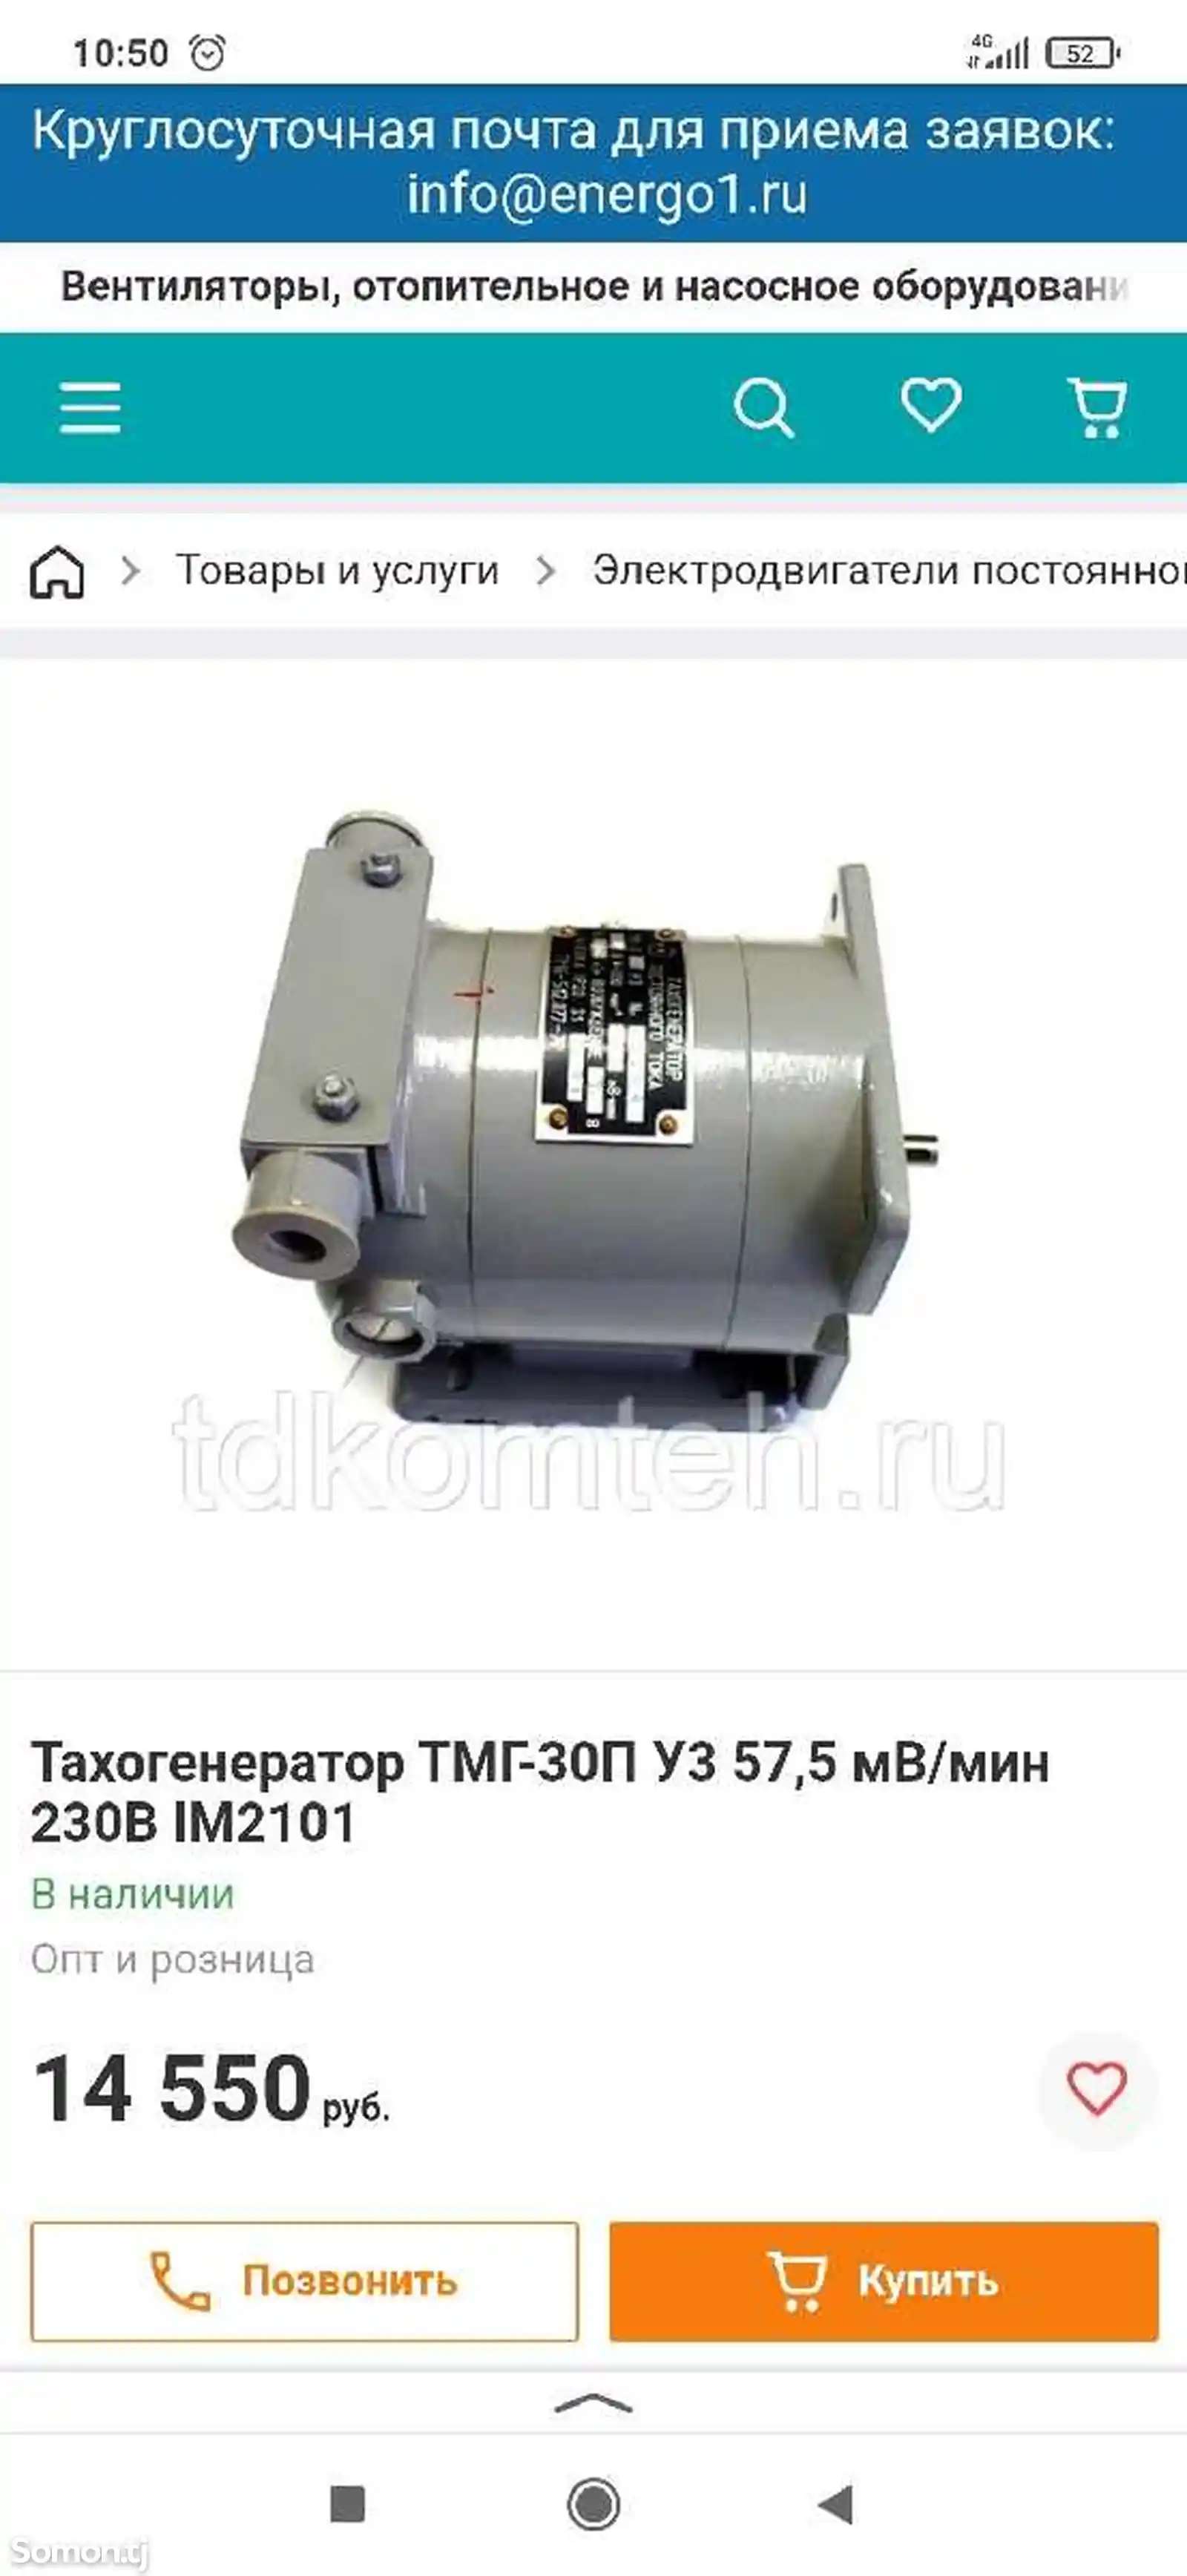 Тахогенератор ТМГ-3